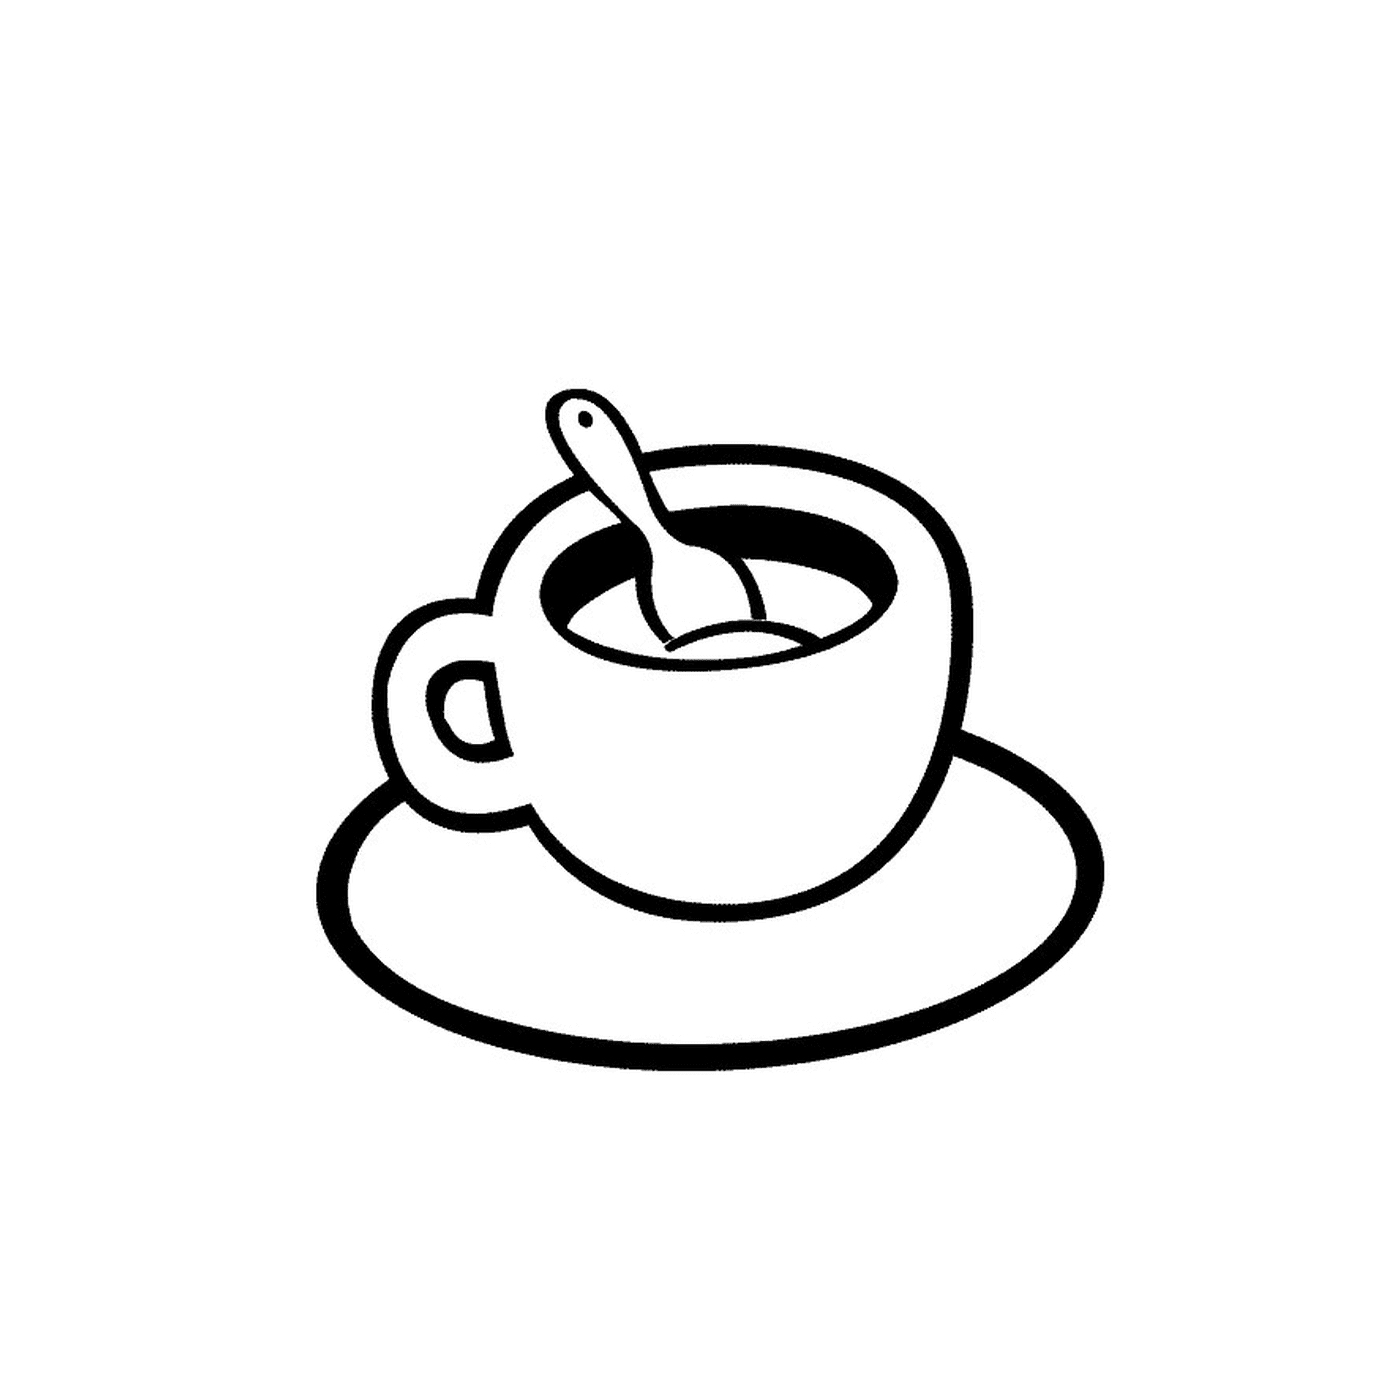   Une cuillère à café 